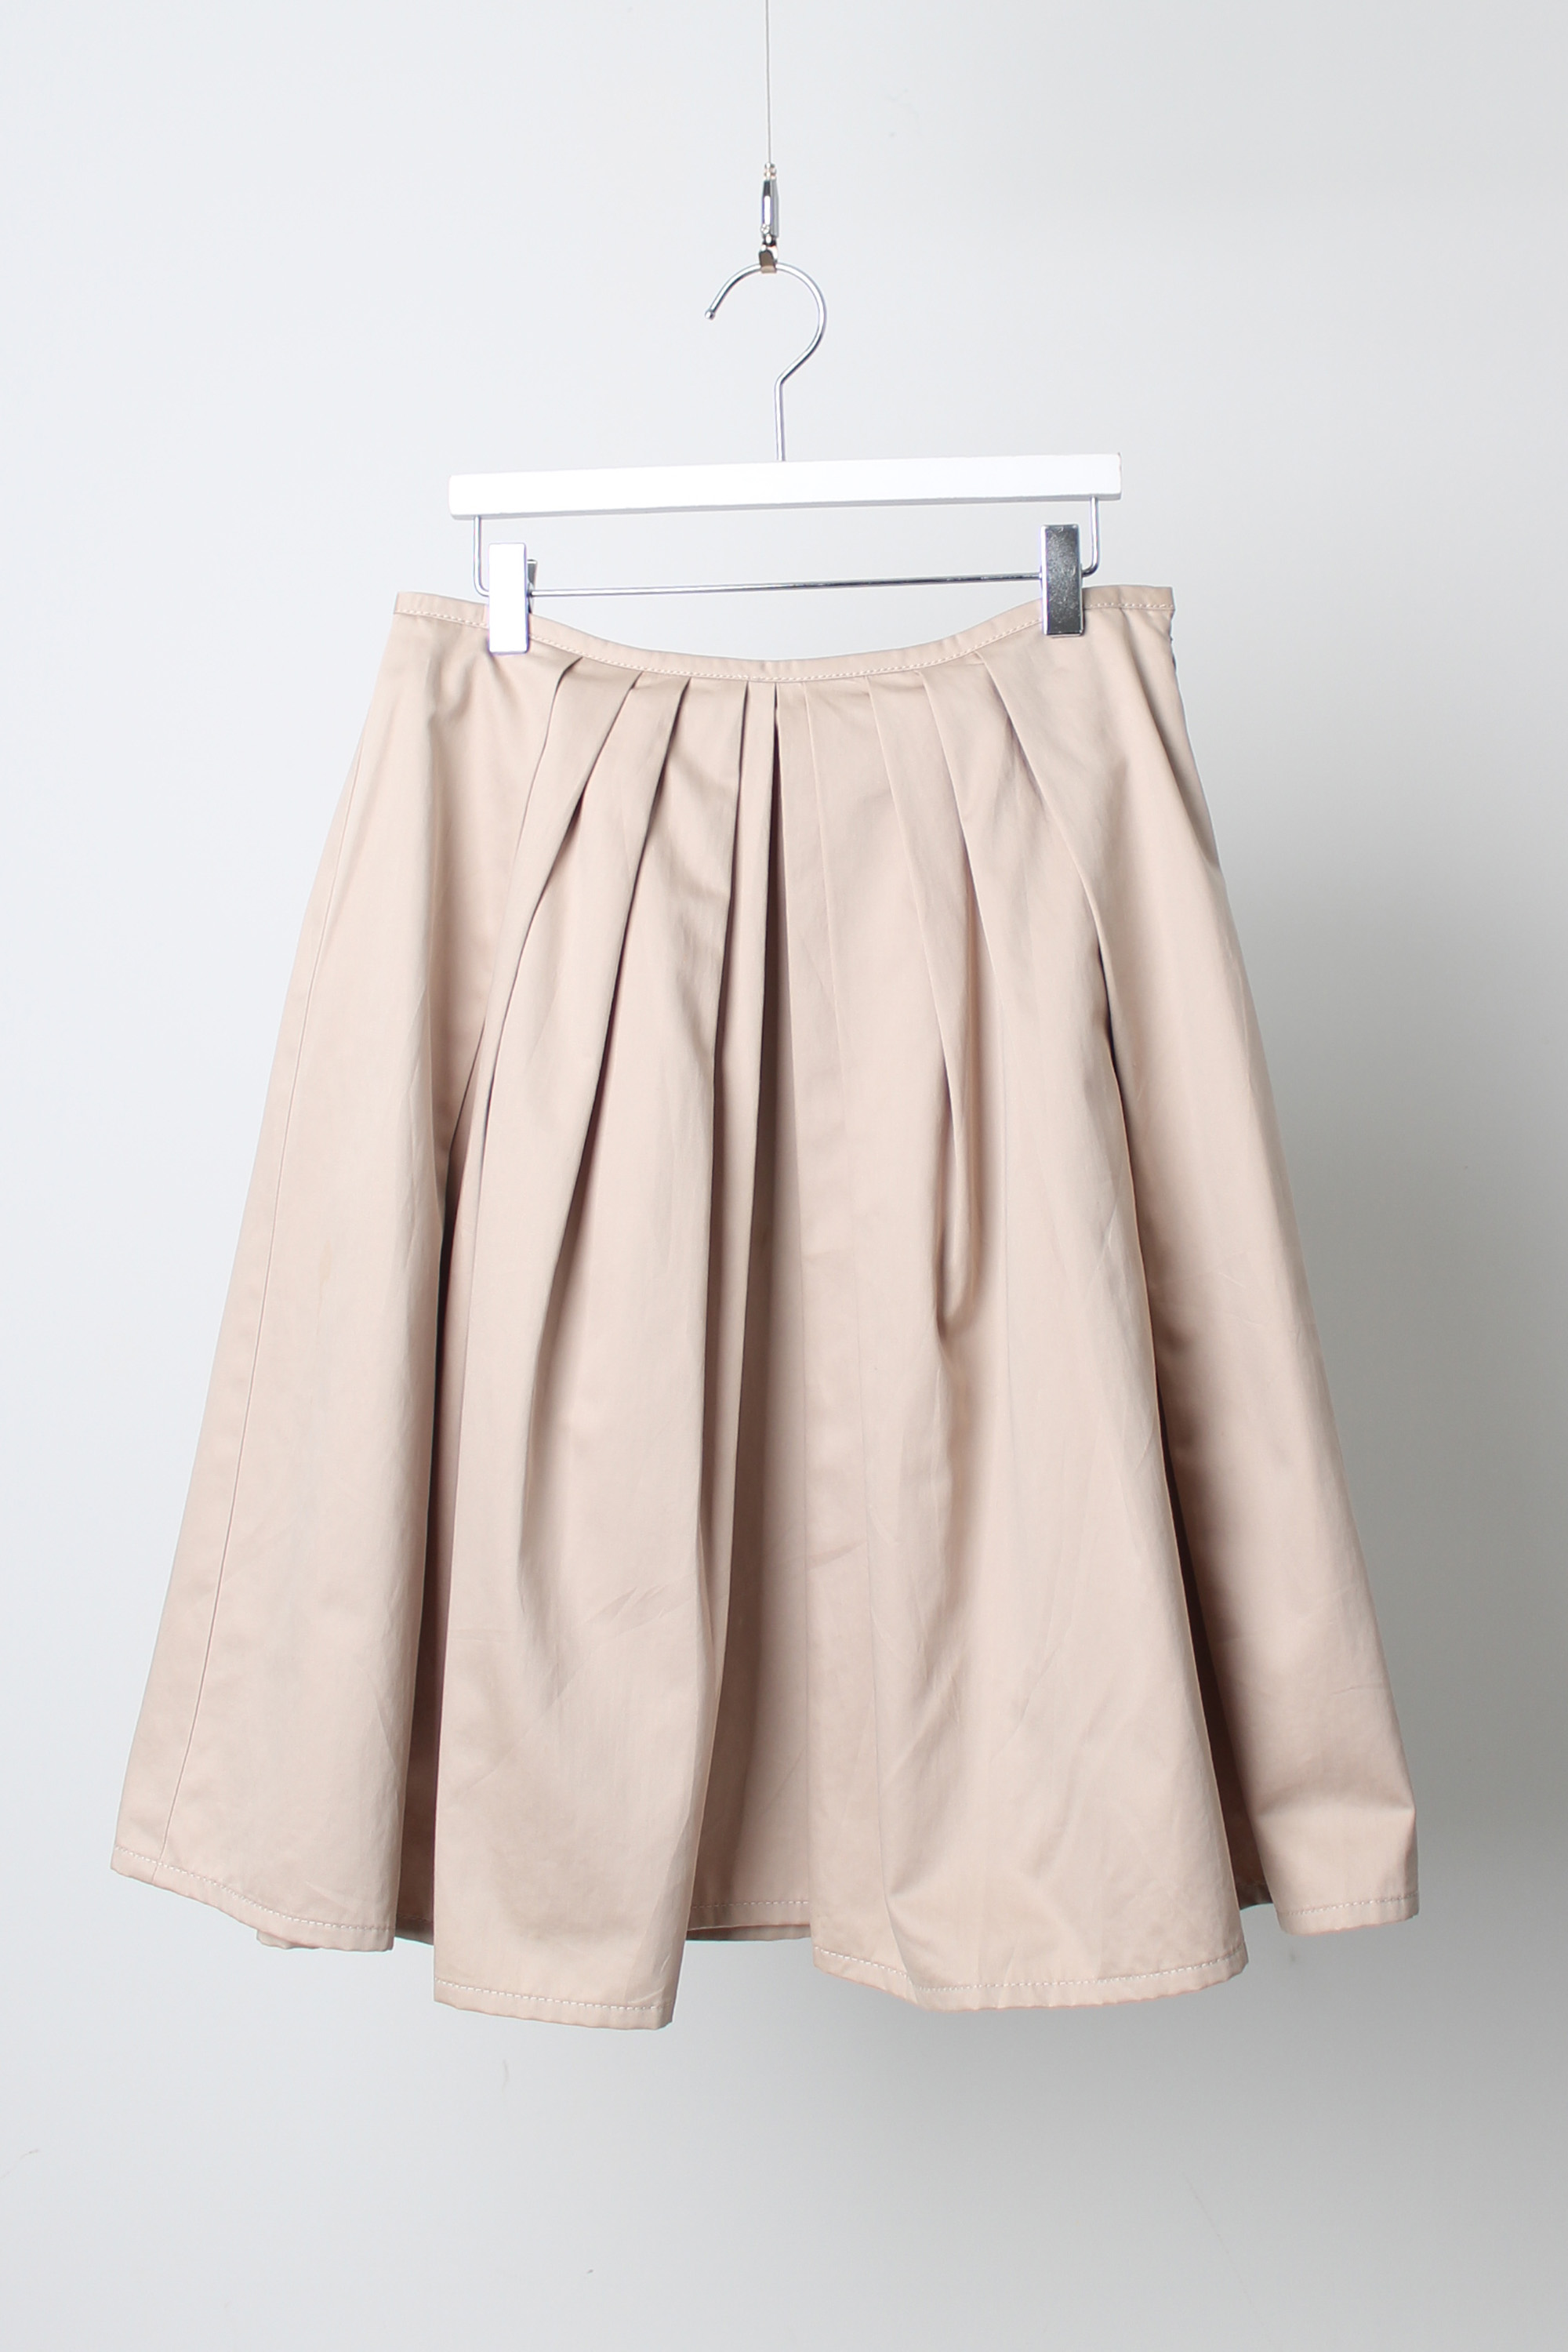 paul smith A-line skirt